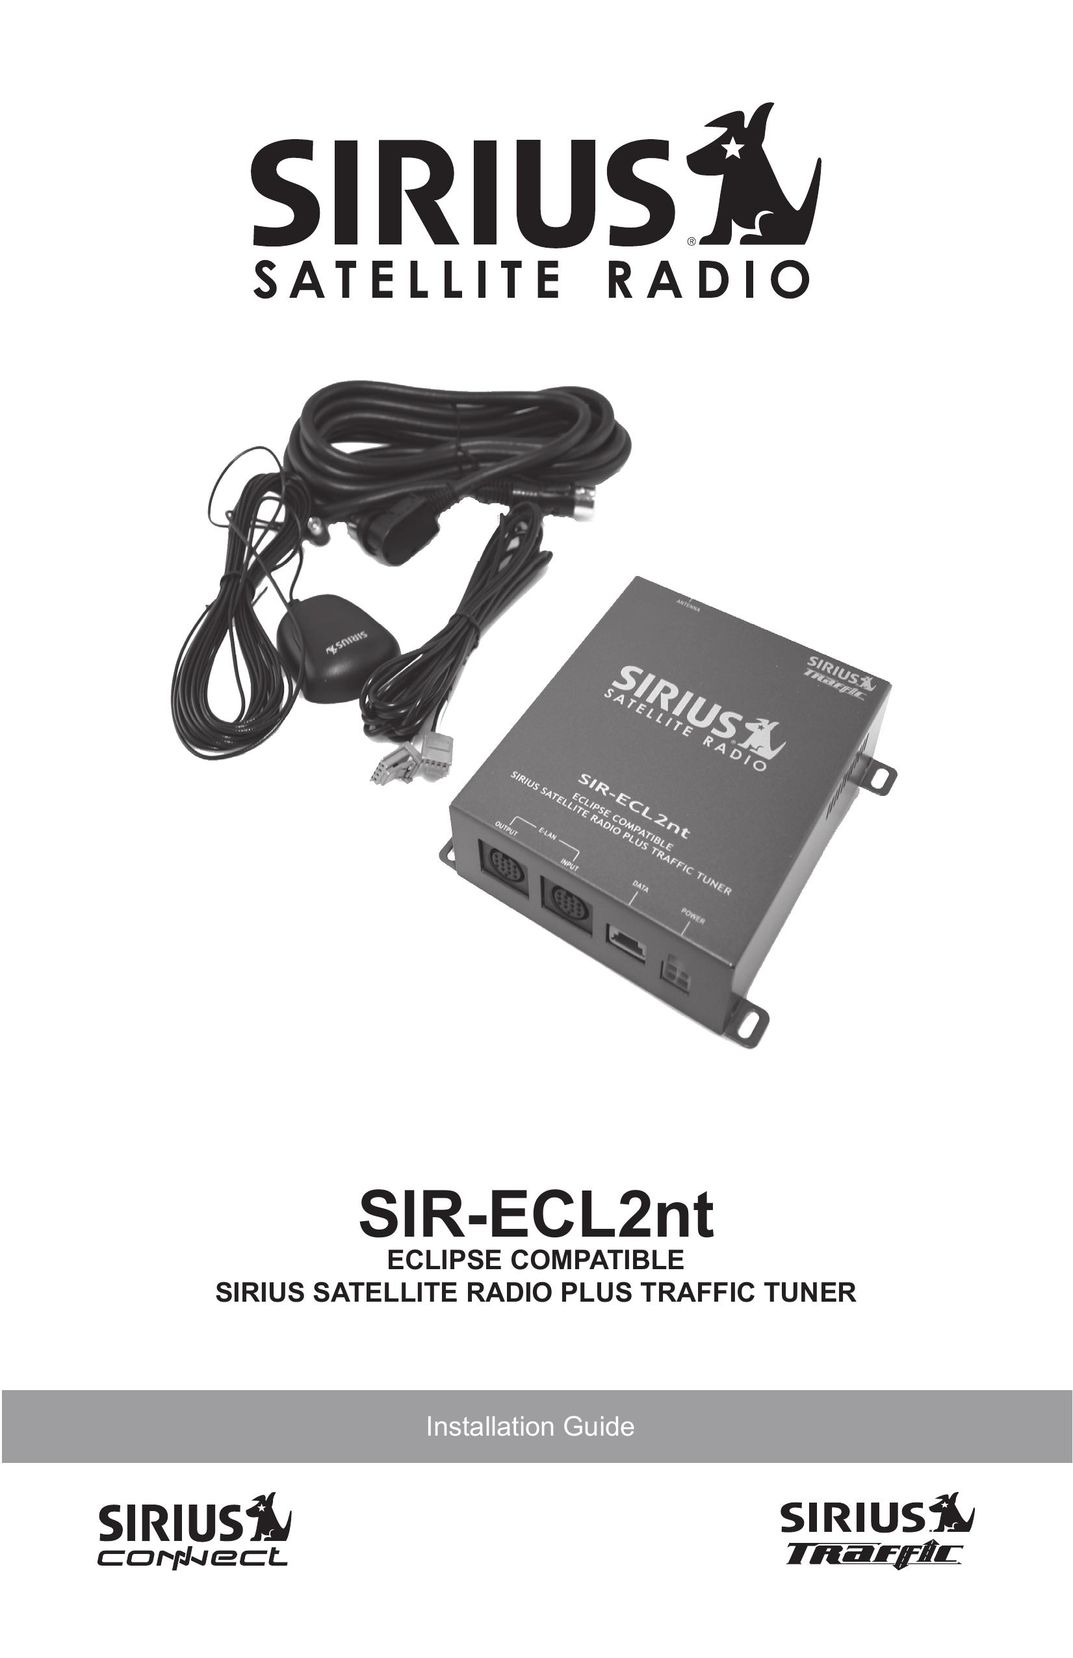 Sirius Satellite Radio SIR-ECL2nt Car Satellite Radio System User Manual